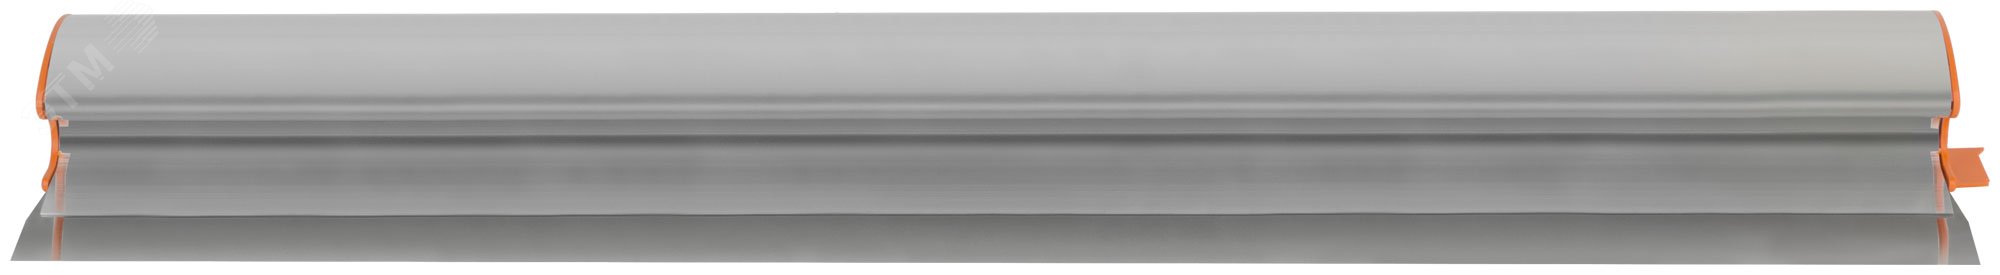 Шпатель-Правило Профи, нержавеющая сталь с алюминиевой ручкой 800 мм 09057 КУРС РОС - превью 4